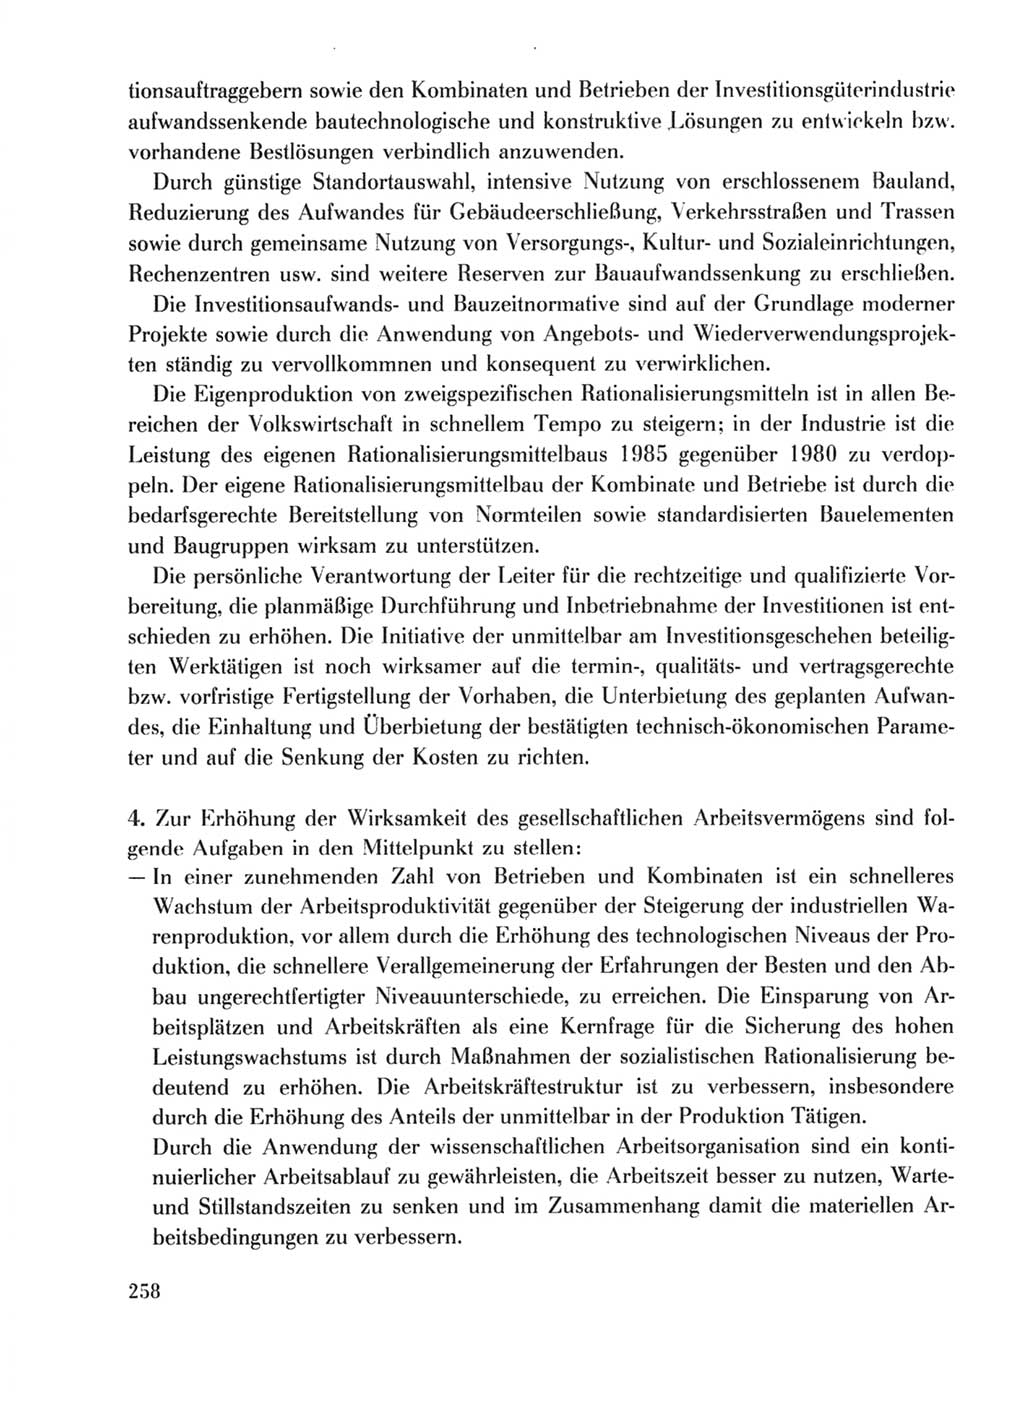 Protokoll der Verhandlungen des Ⅹ. Parteitages der Sozialistischen Einheitspartei Deutschlands (SED) [Deutsche Demokratische Republik (DDR)] 1981, Band 2, Seite 258 (Prot. Verh. Ⅹ. PT SED DDR 1981, Bd. 2, S. 258)